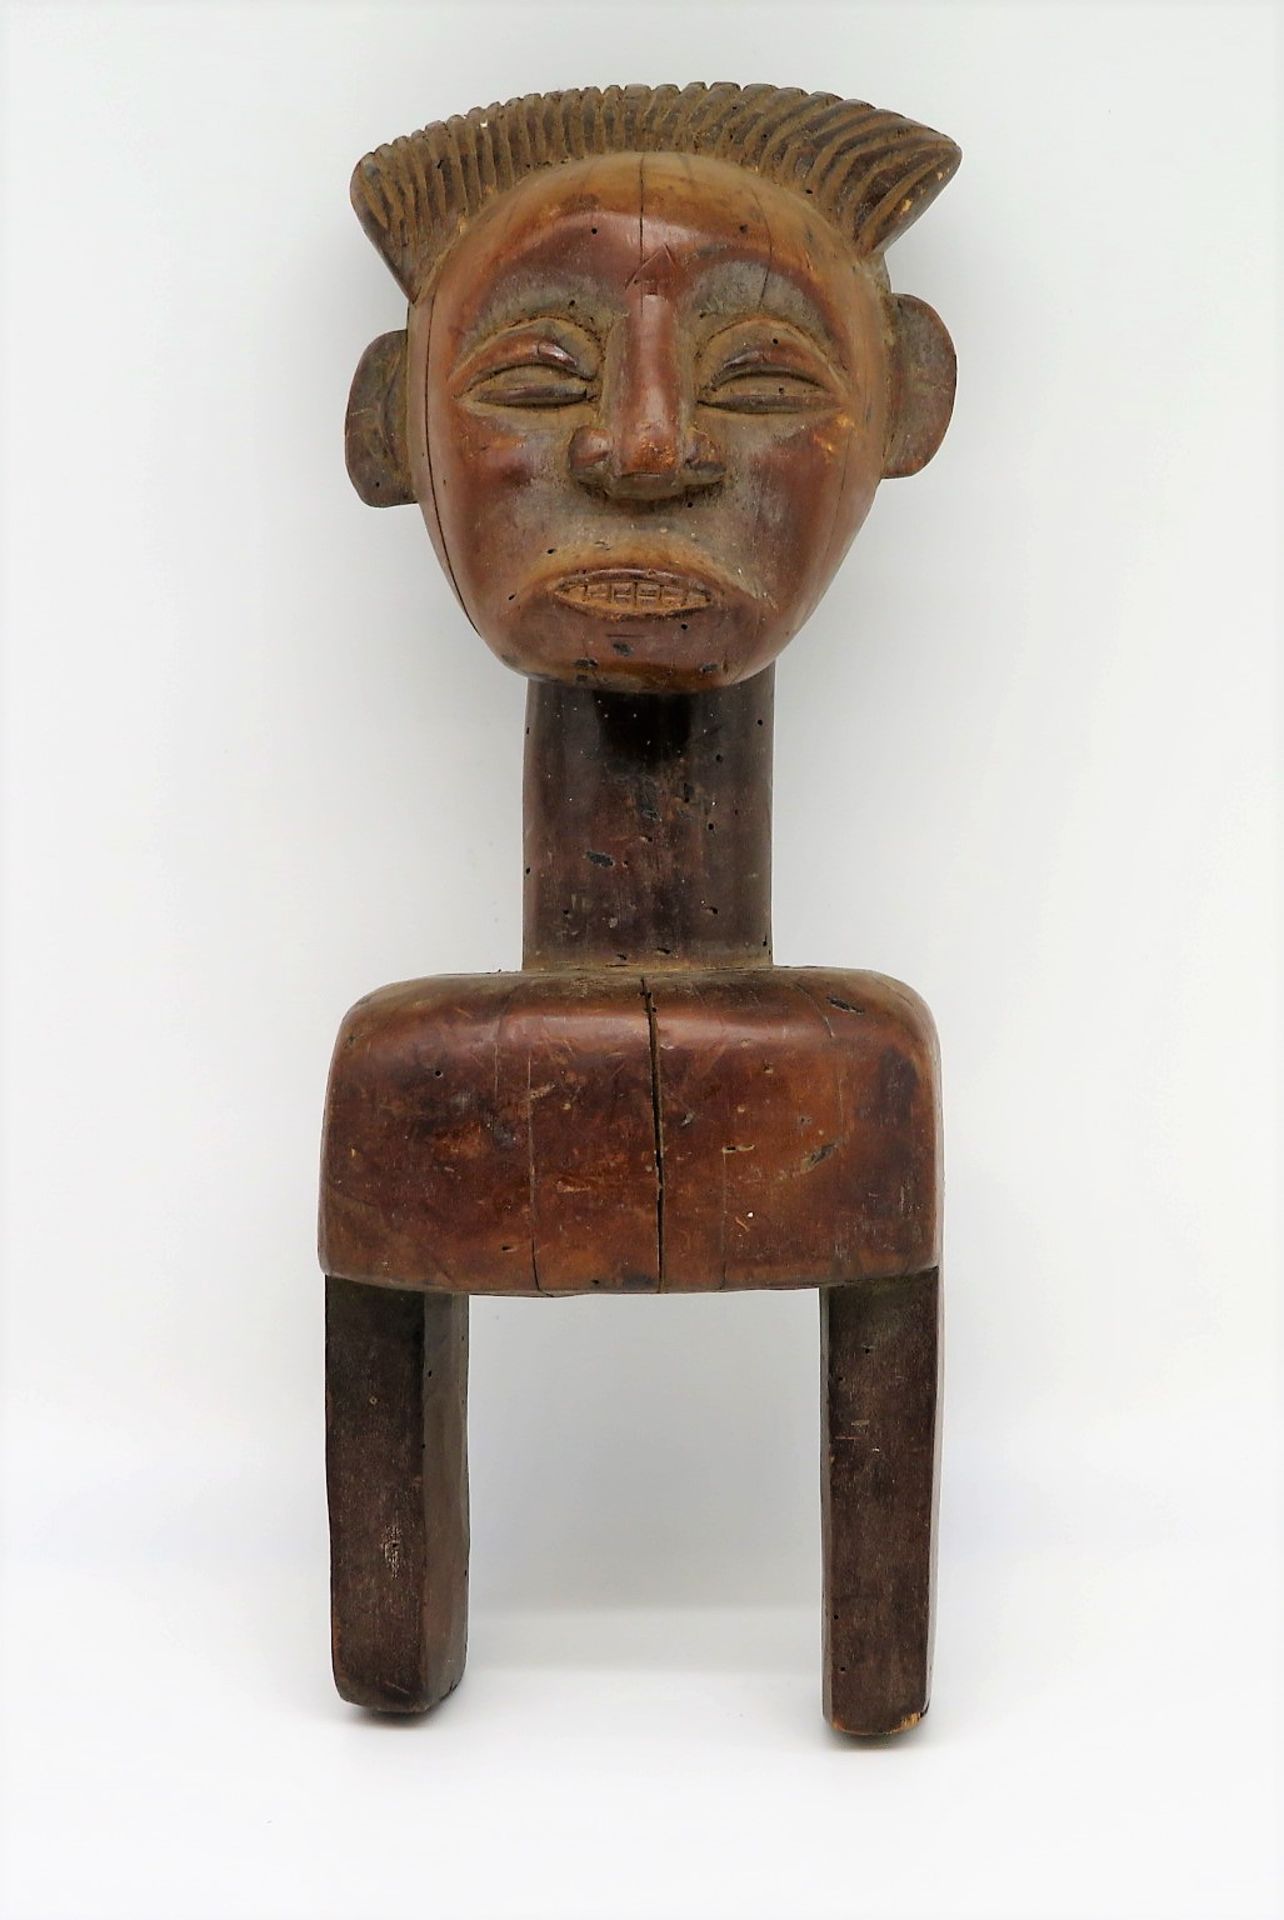 Holzskulptur, Afrika, Elfenbeinküste, weiblich, Holz geschnitzt, authentisch, 40 x 15 x 11,5 cm.